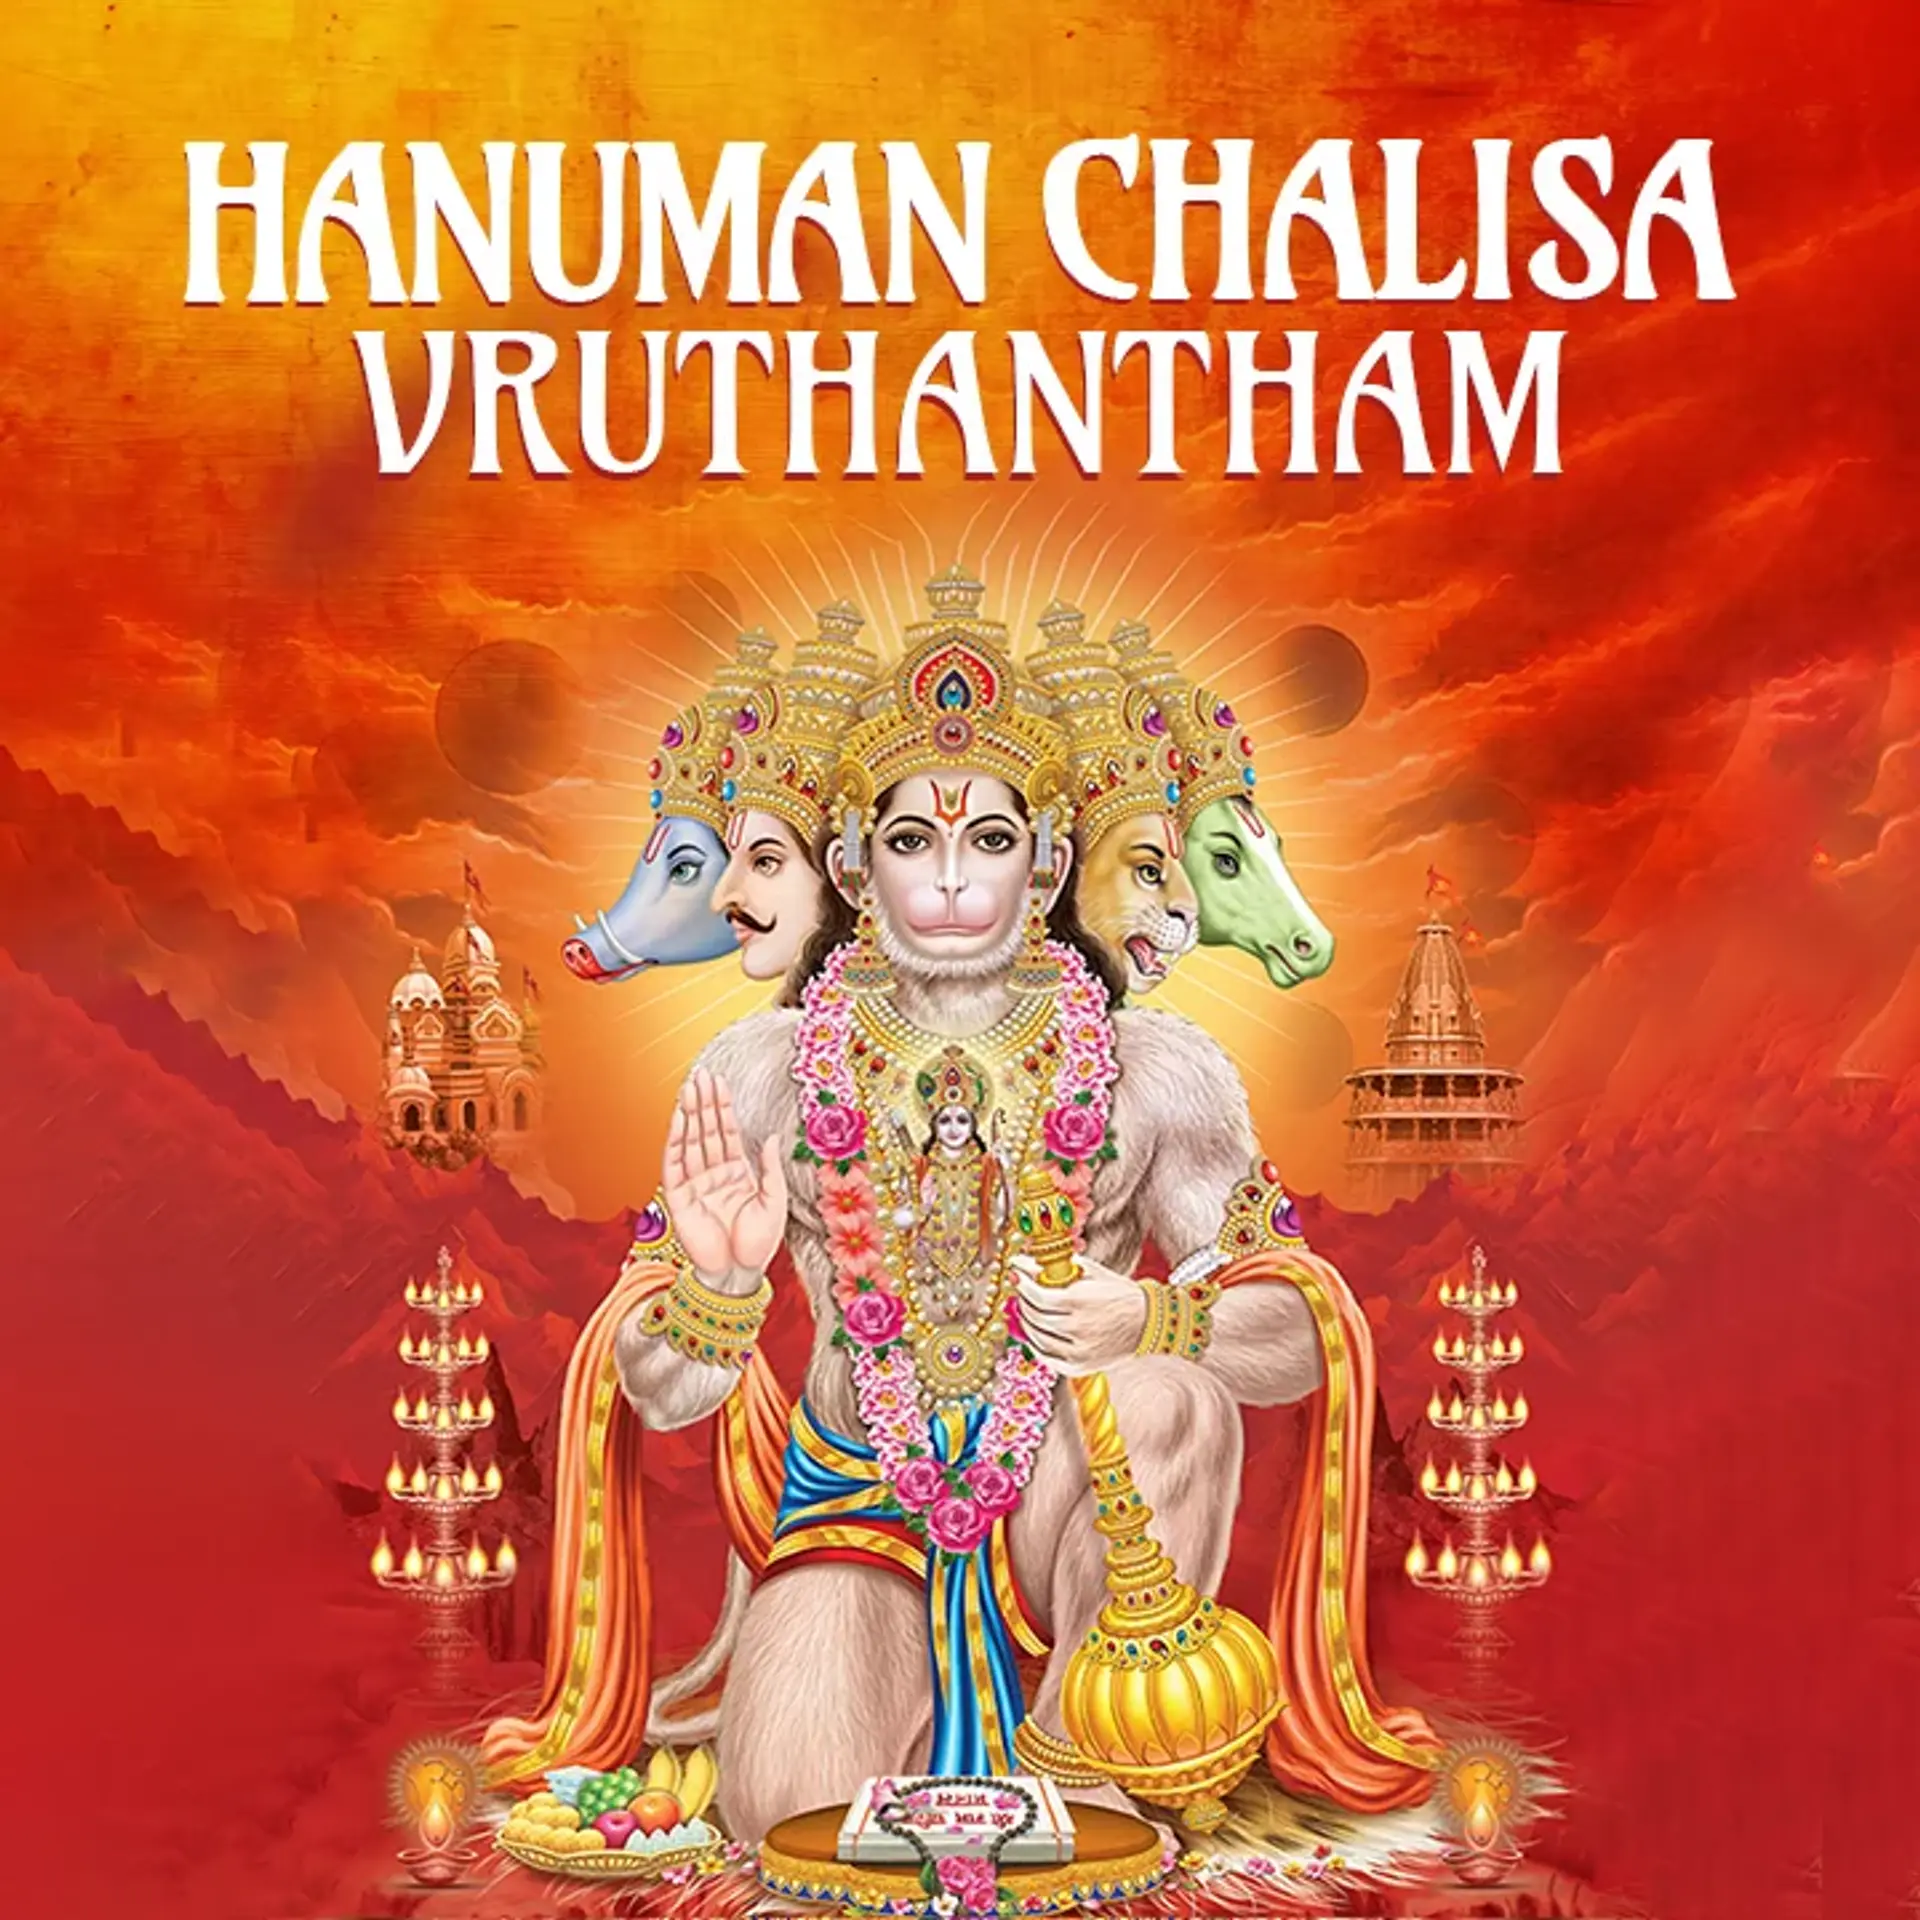 9 Hanumanthuni Rupaalu, Mahimalu